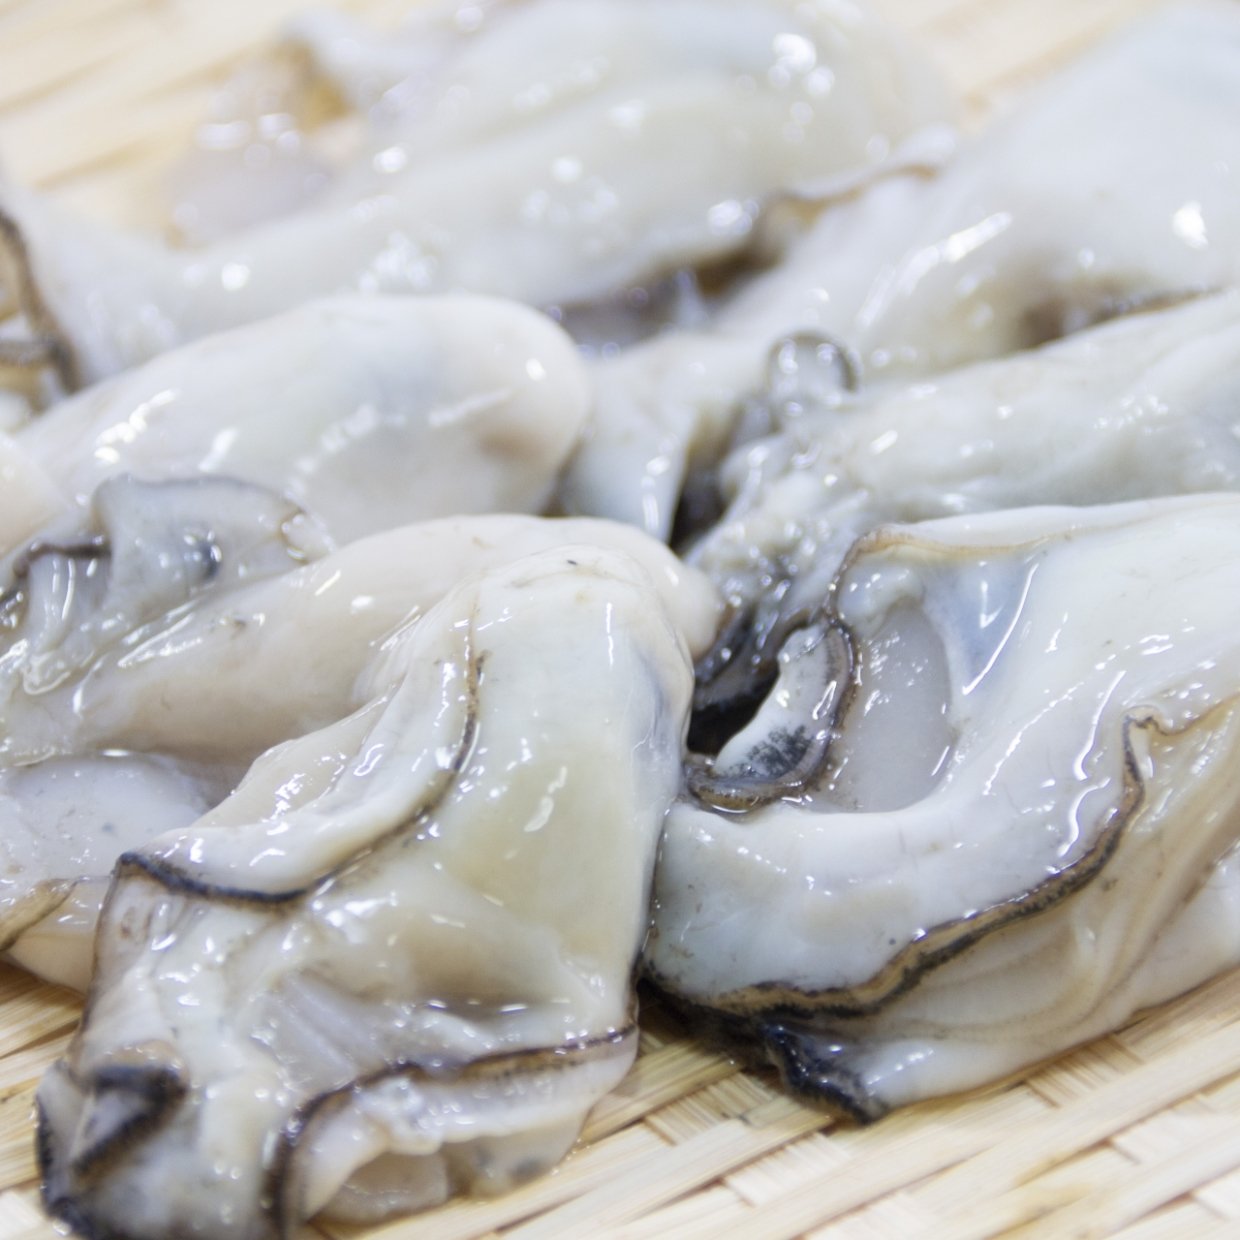  冬に味わいたい旨味たっぷりの牡蠣！ぷりぷりの牡蠣を自宅で楽しむレシピ3選 